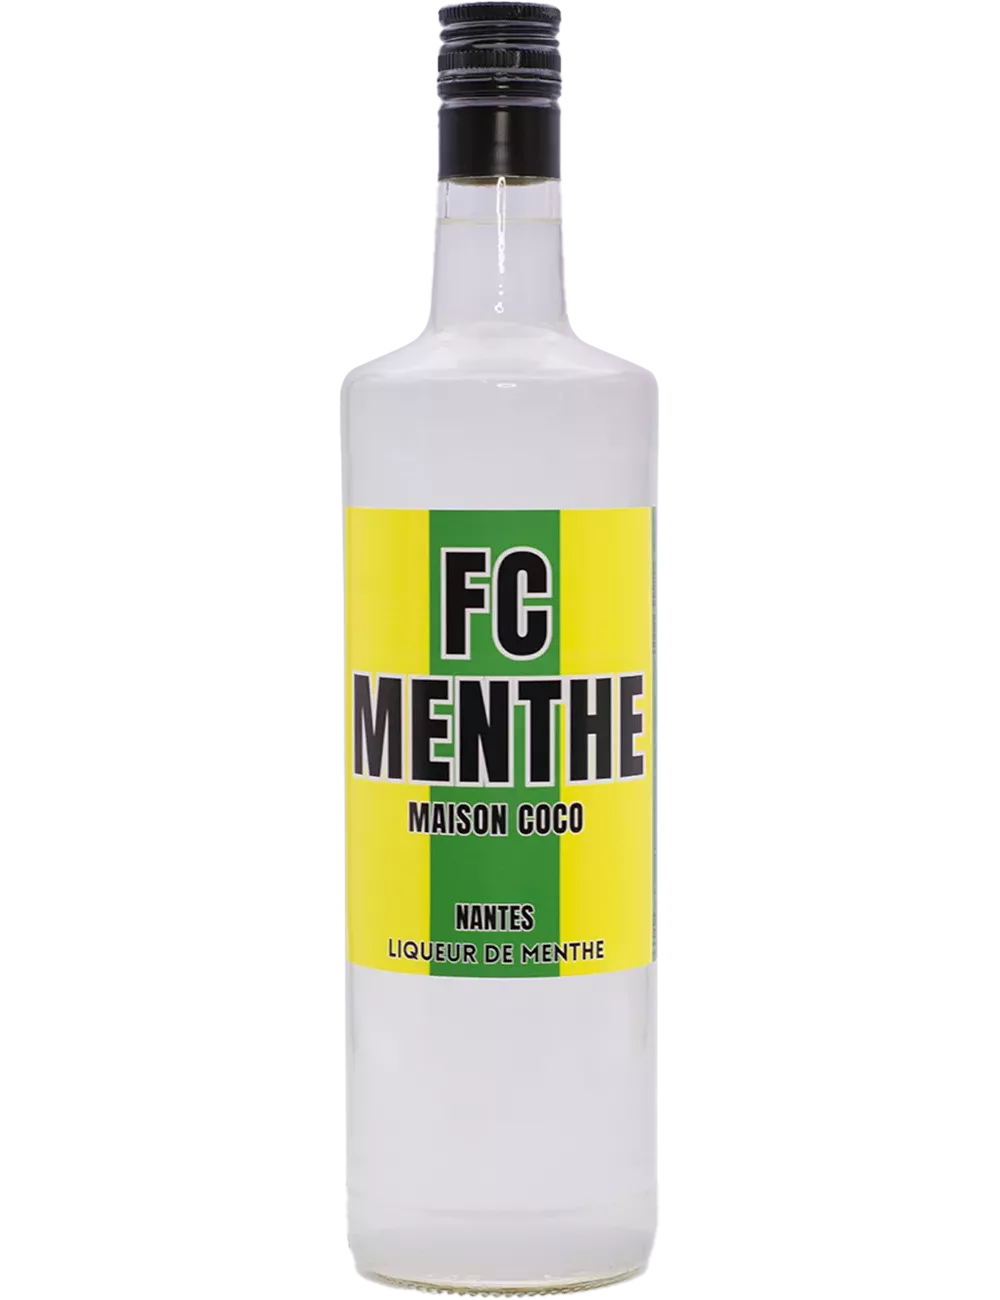 FC Menthe - Maison Coco - Liqueur